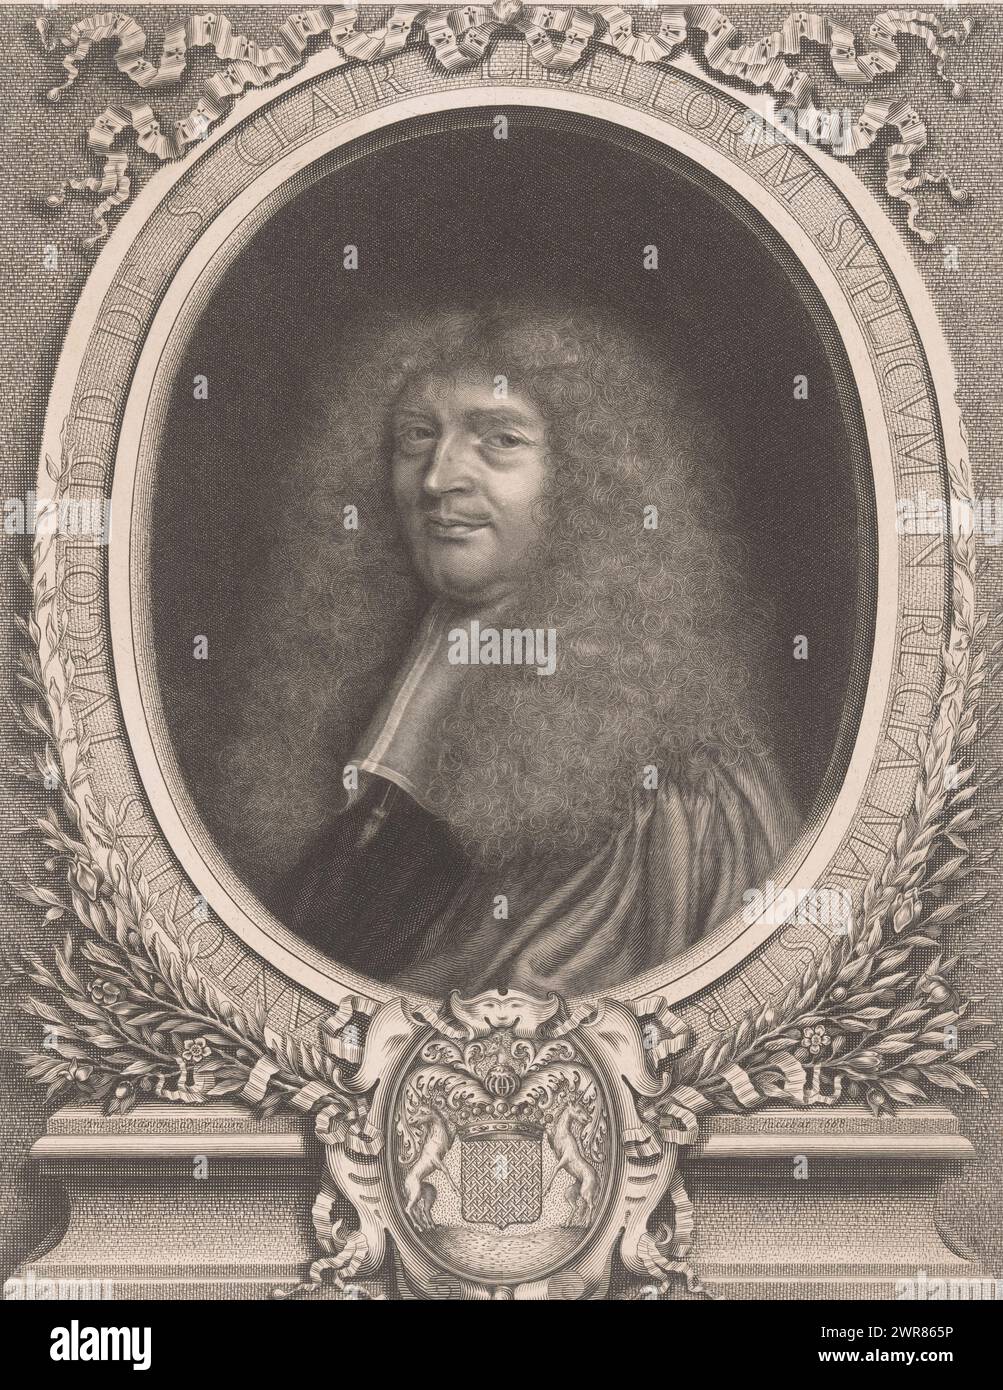 Portrait of Antoine Turgot, print maker: Antoine Masson, France, 1668, paper, engraving, height 352 mm × width 275 mm, print Stock Photo